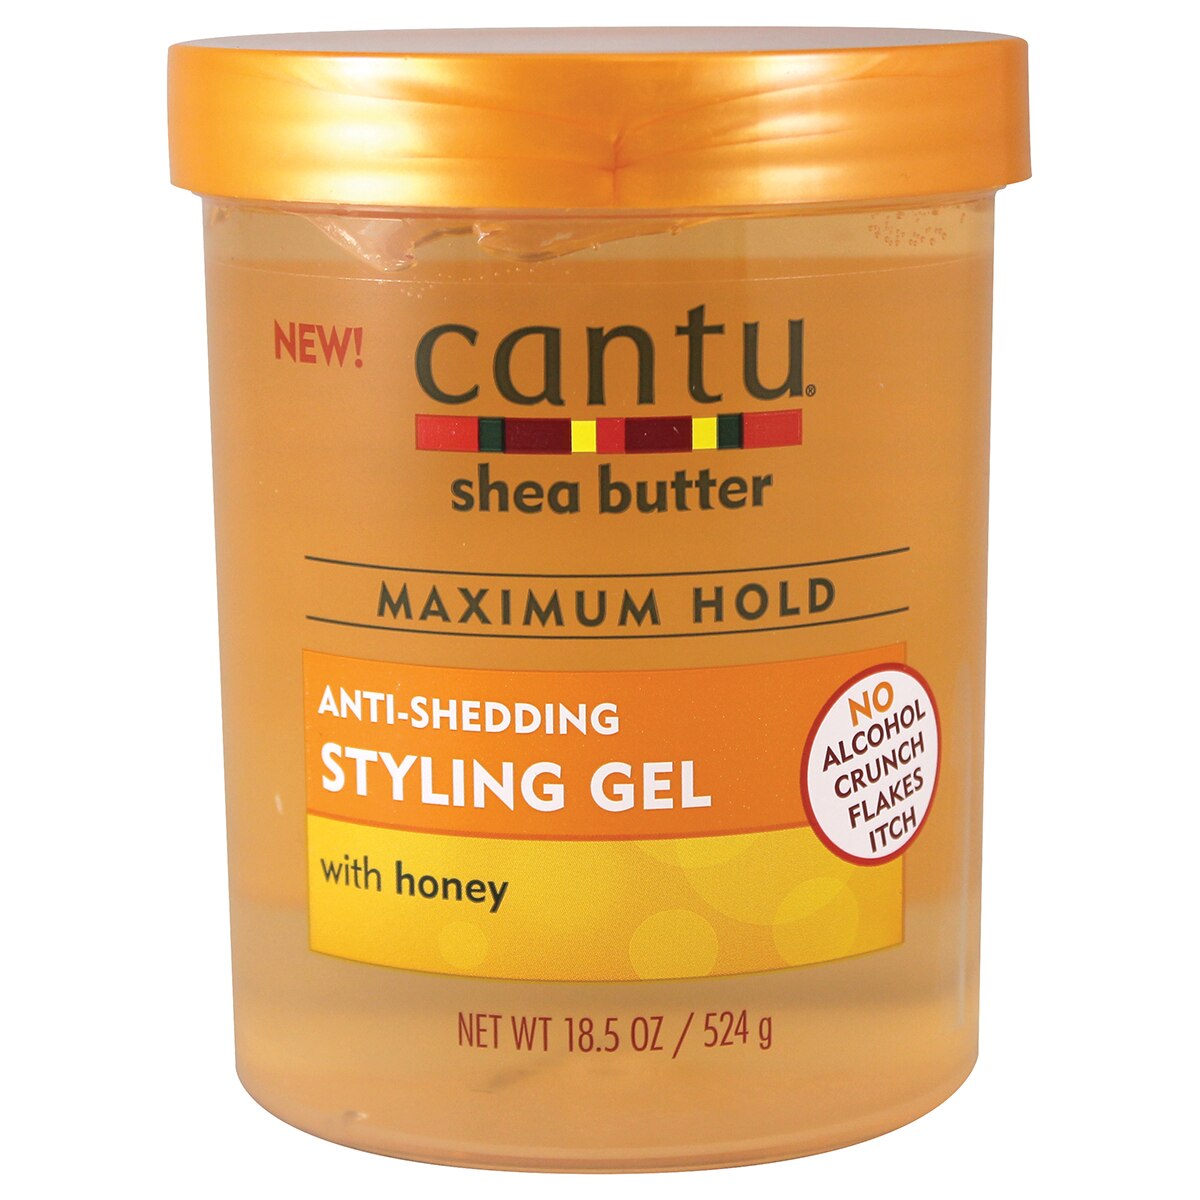 Cantu Shea Butter Anti-Shedding Styling Gel with Honey, 18.5 OZ